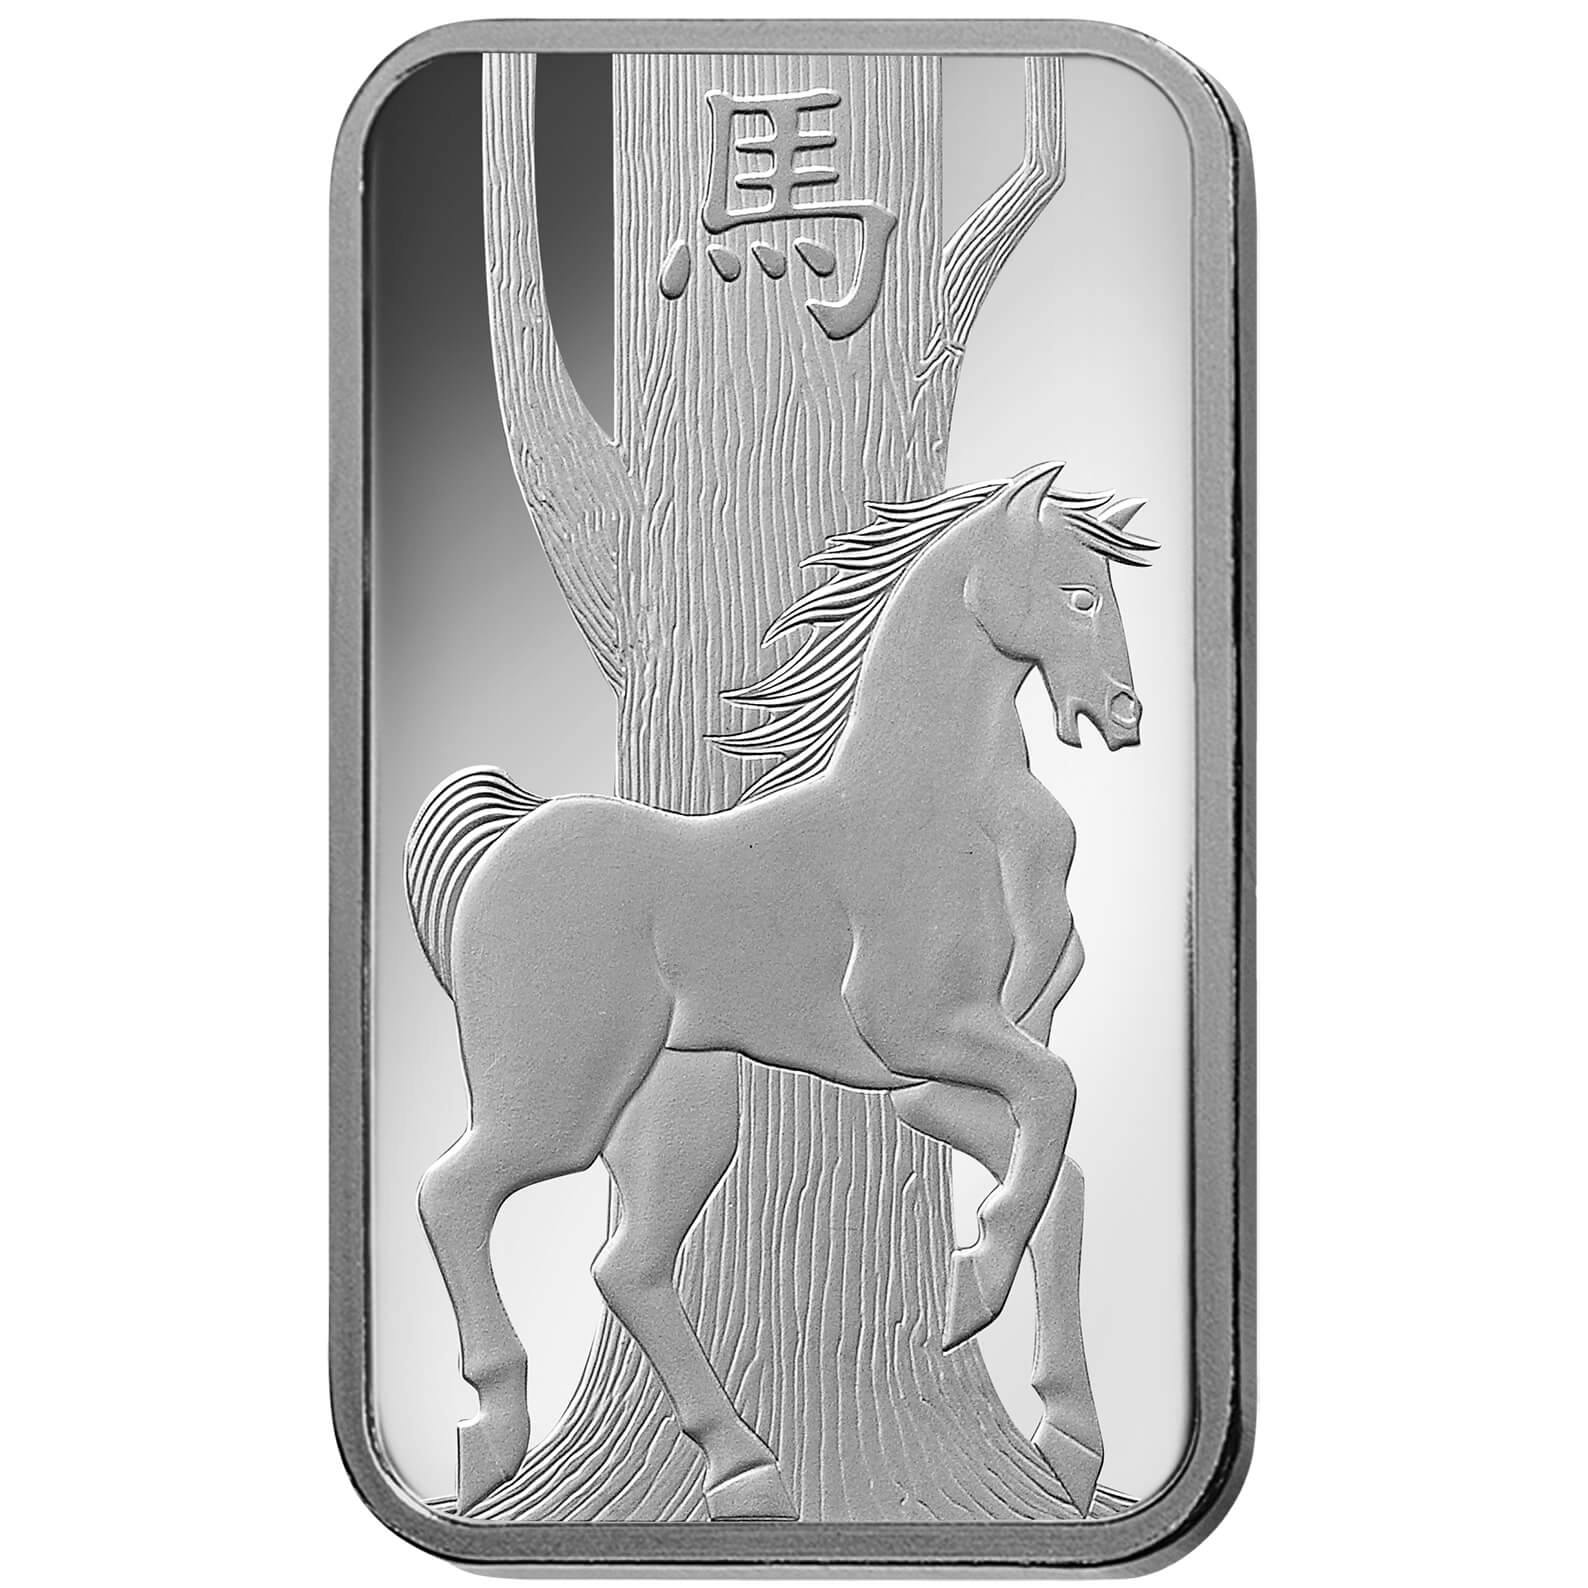 Comprare 100 grammi lingottino d'argento puro 999.9 - PAMP Svizzera Lunar Cavallo Front